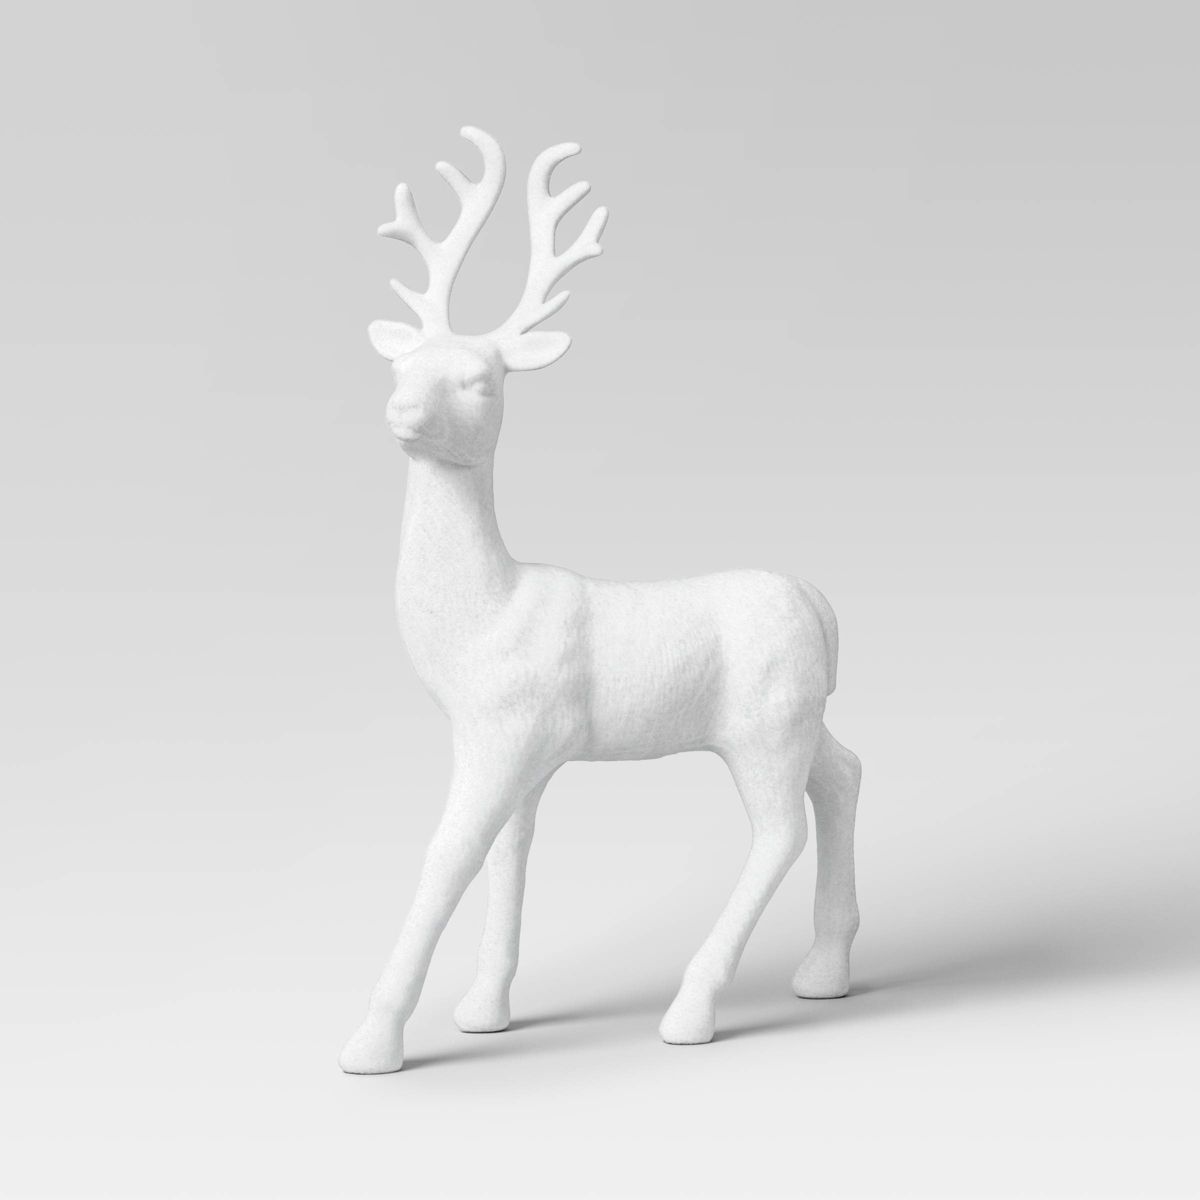 12.5" Metallic Plastic Standing Deer Animal Christmas Figurine - Wondershop™ White | Target